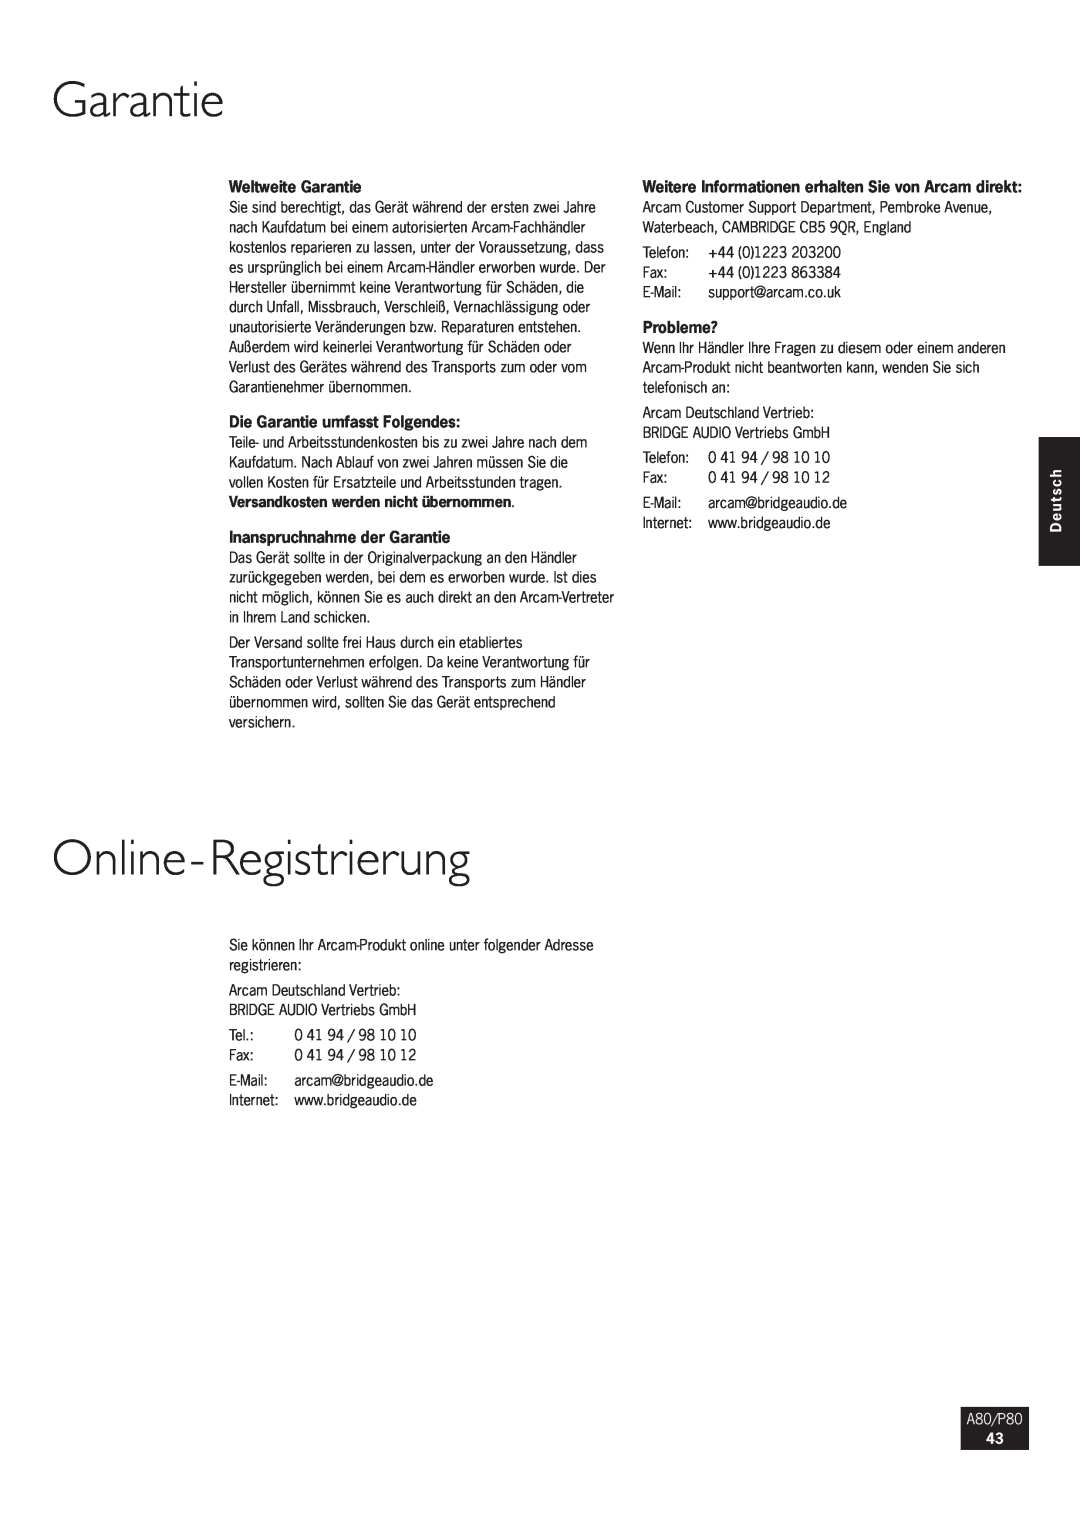 Arcam P80 Online-Registrierung, Weltweite Garantie, Die Garantie umfasst Folgendes, Inanspruchnahme der Garantie, Deutsch 